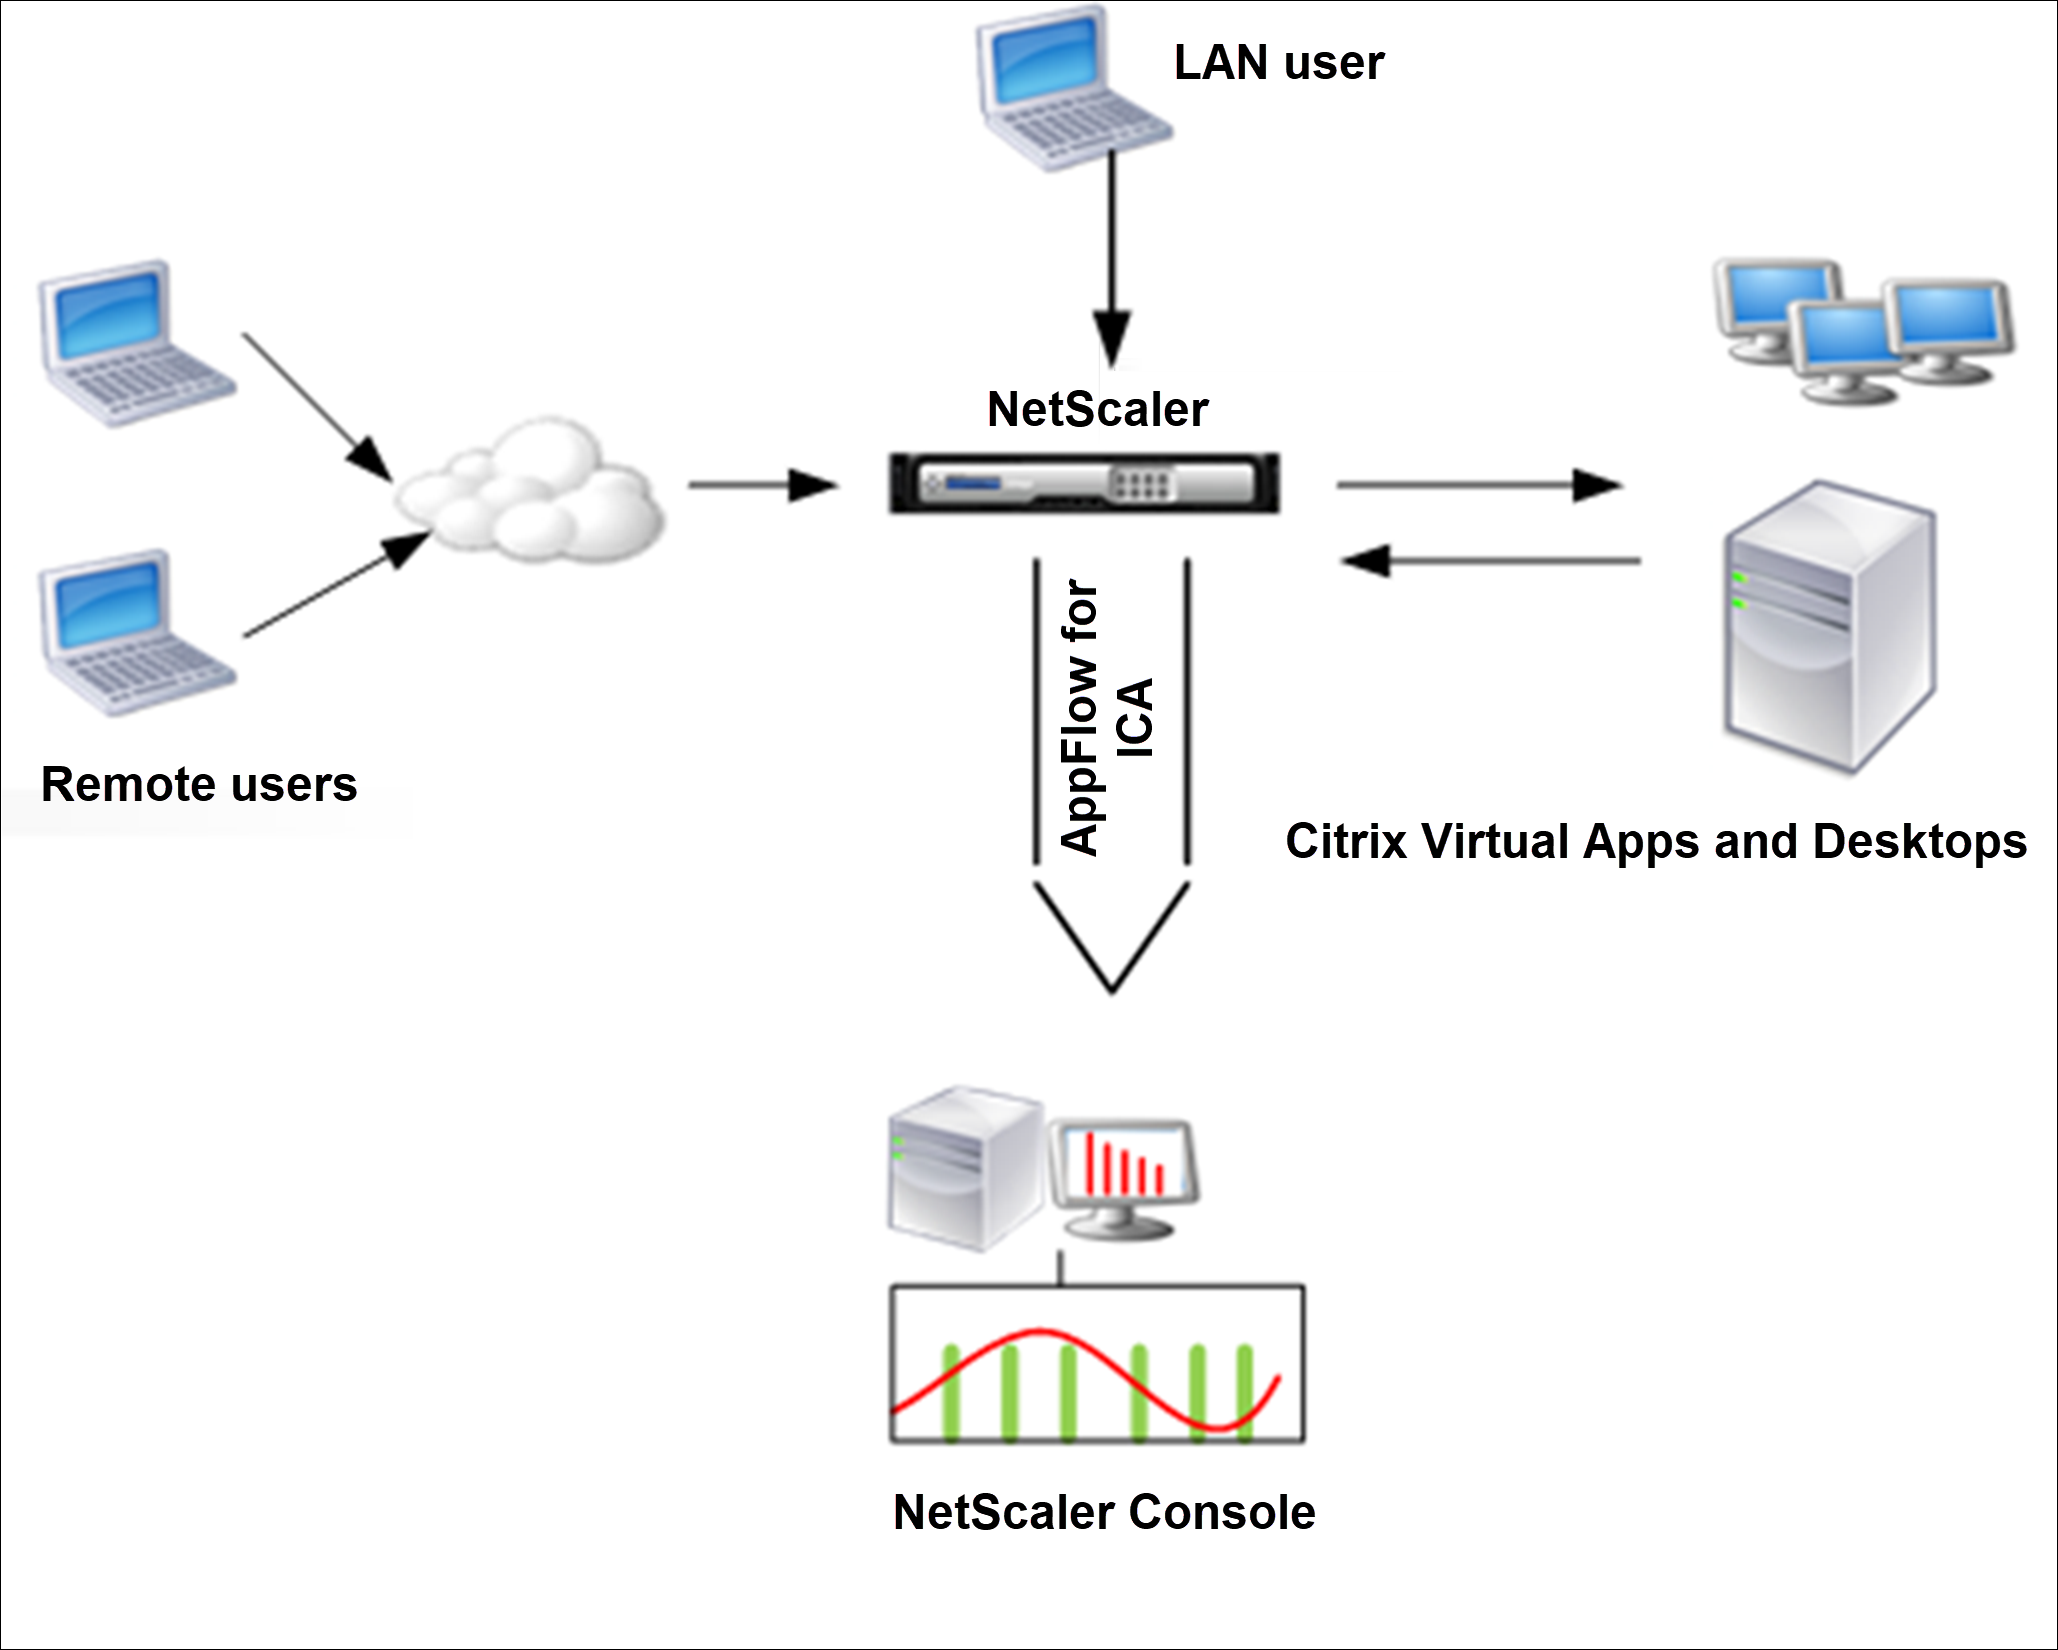 Deploy NetScaler in LAN user mode